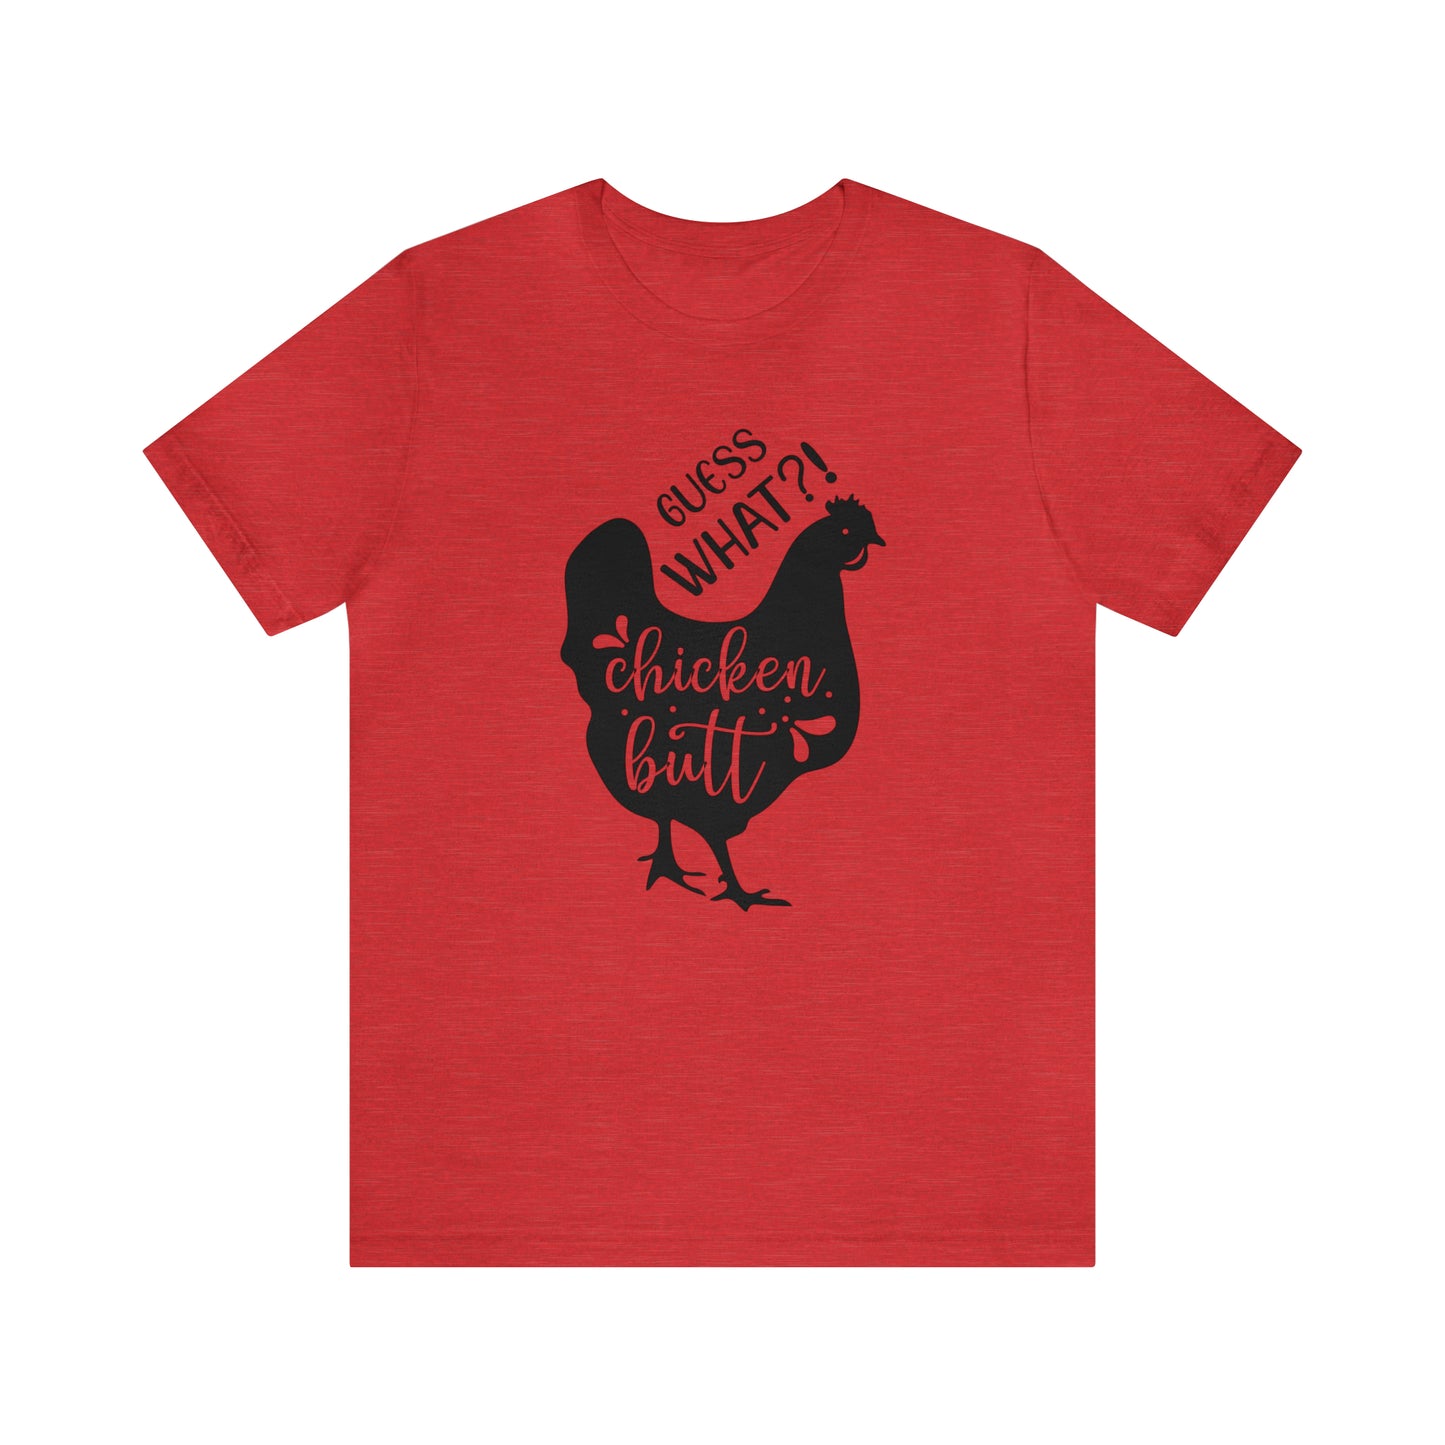 Guess What?! Chicken Butt Short Sleeve T-shirt